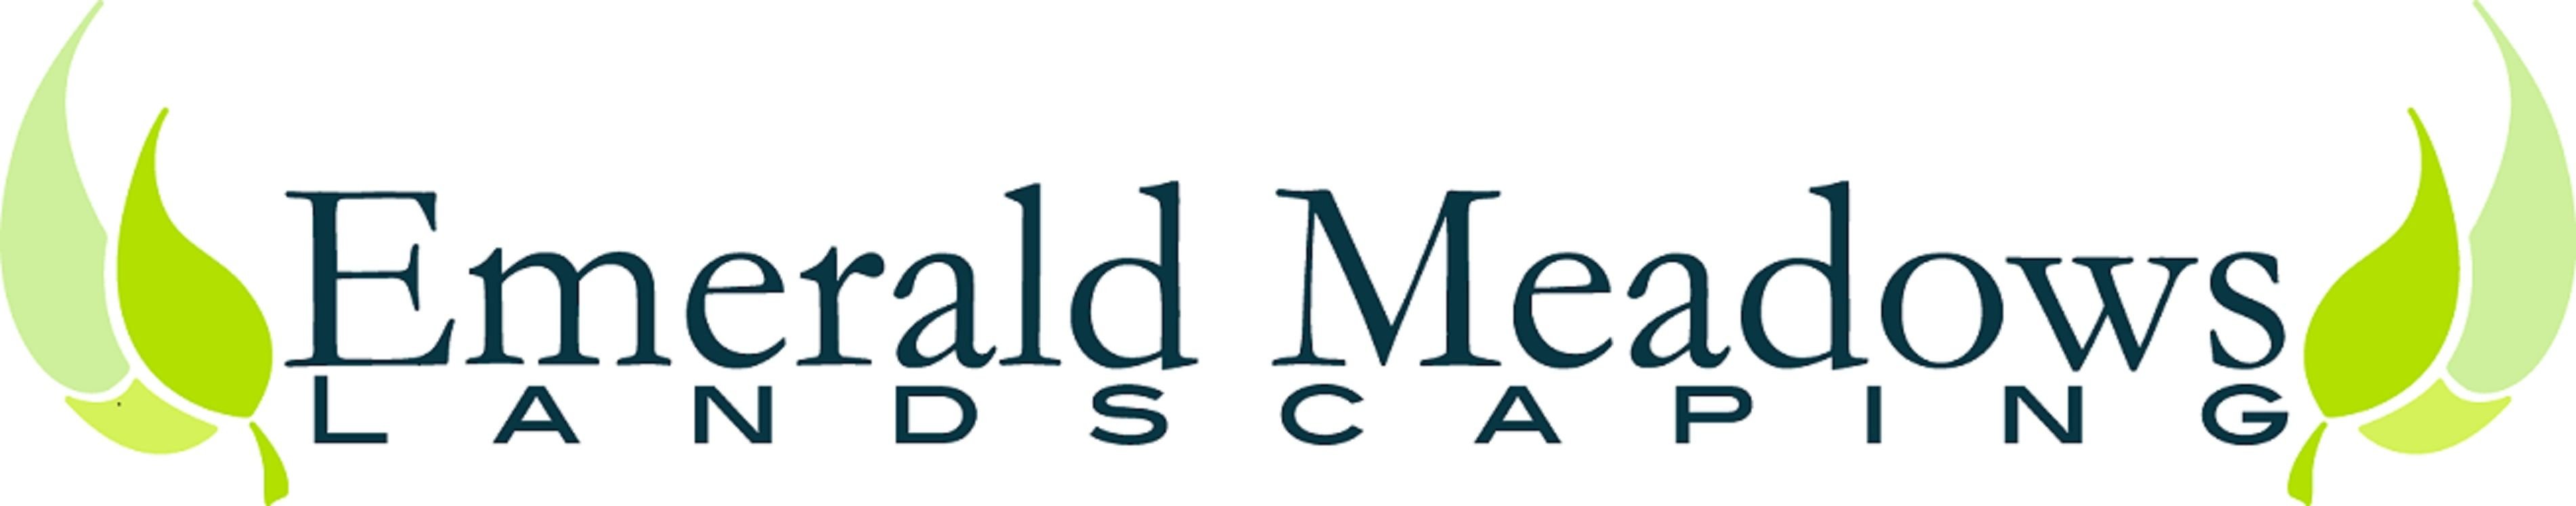 Emerald Meadows Landscaping Logo